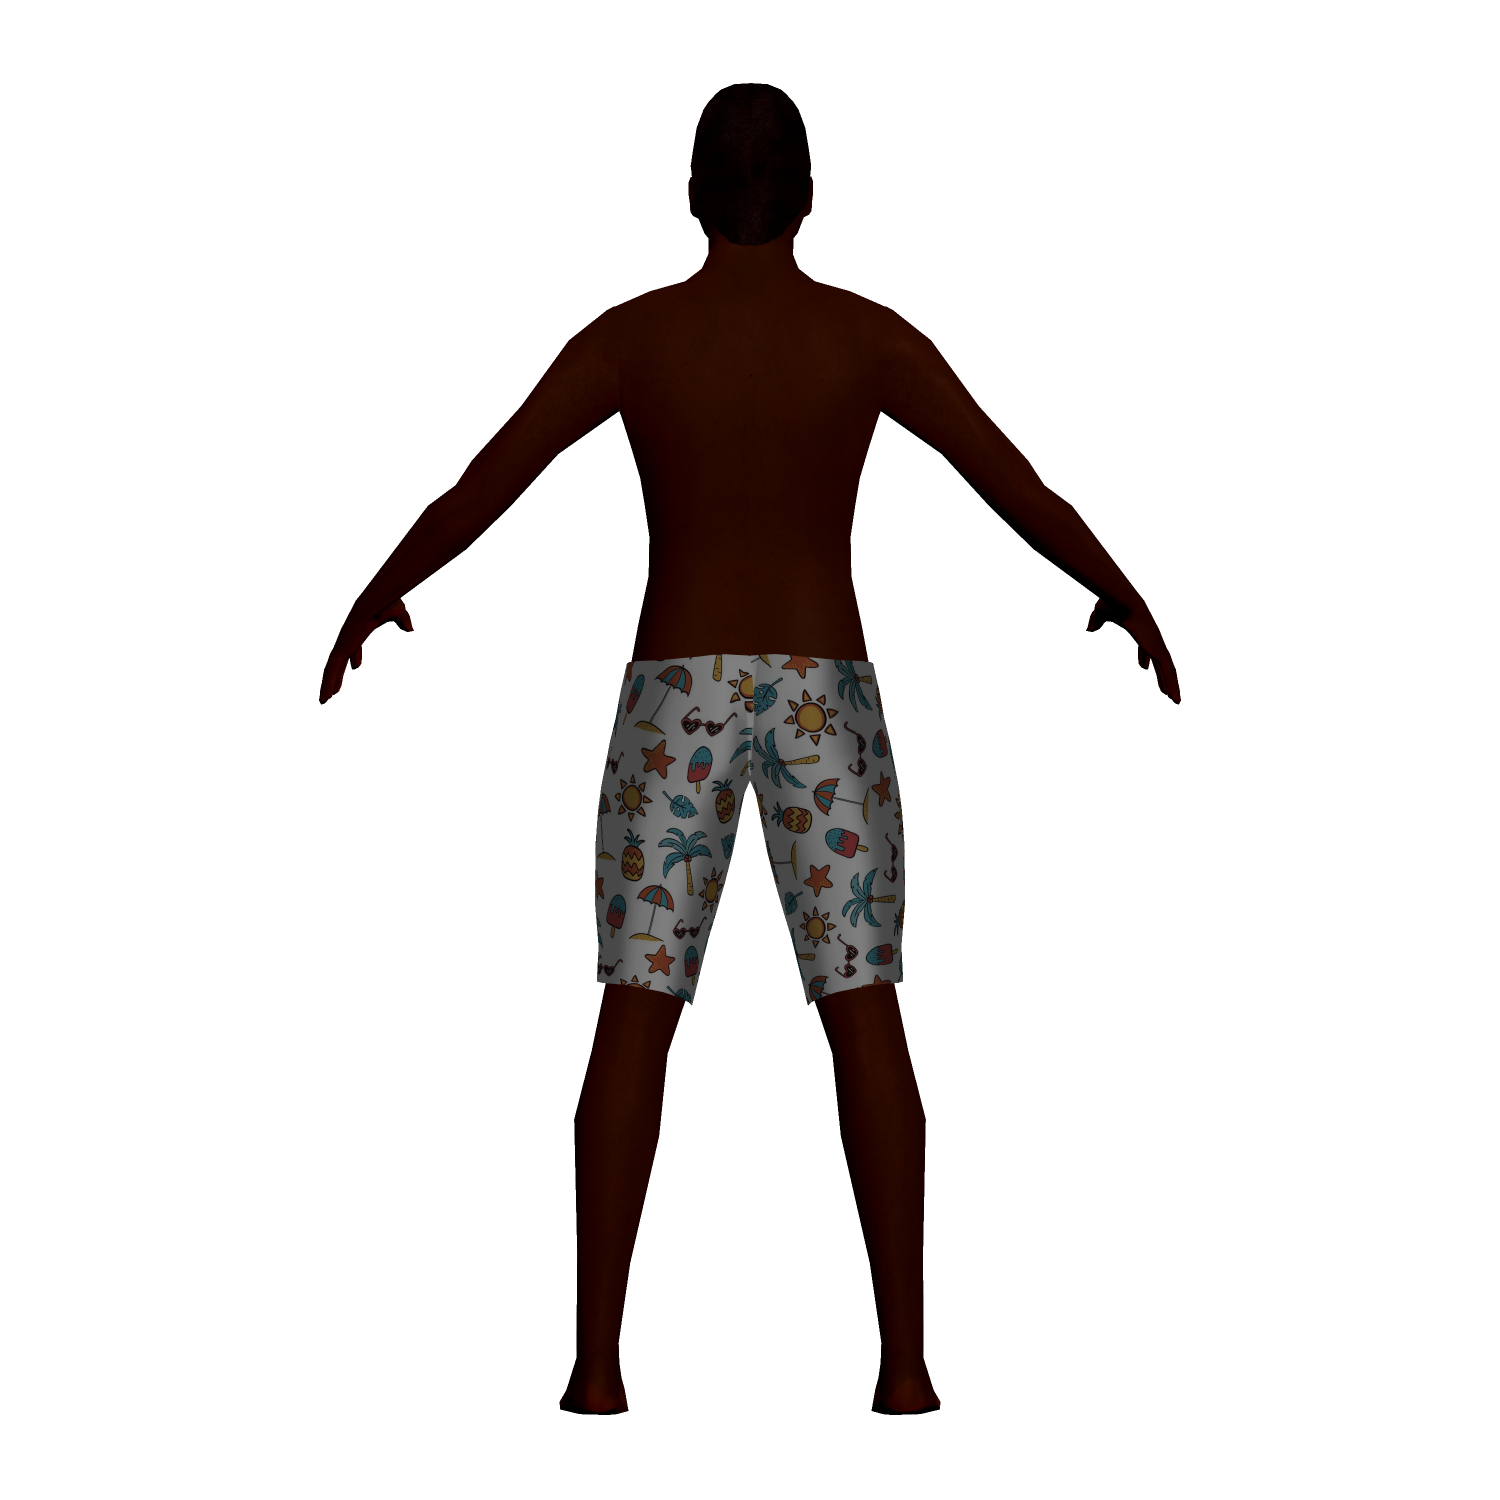 Man swimsuit 3D model - TurboSquid 1637284